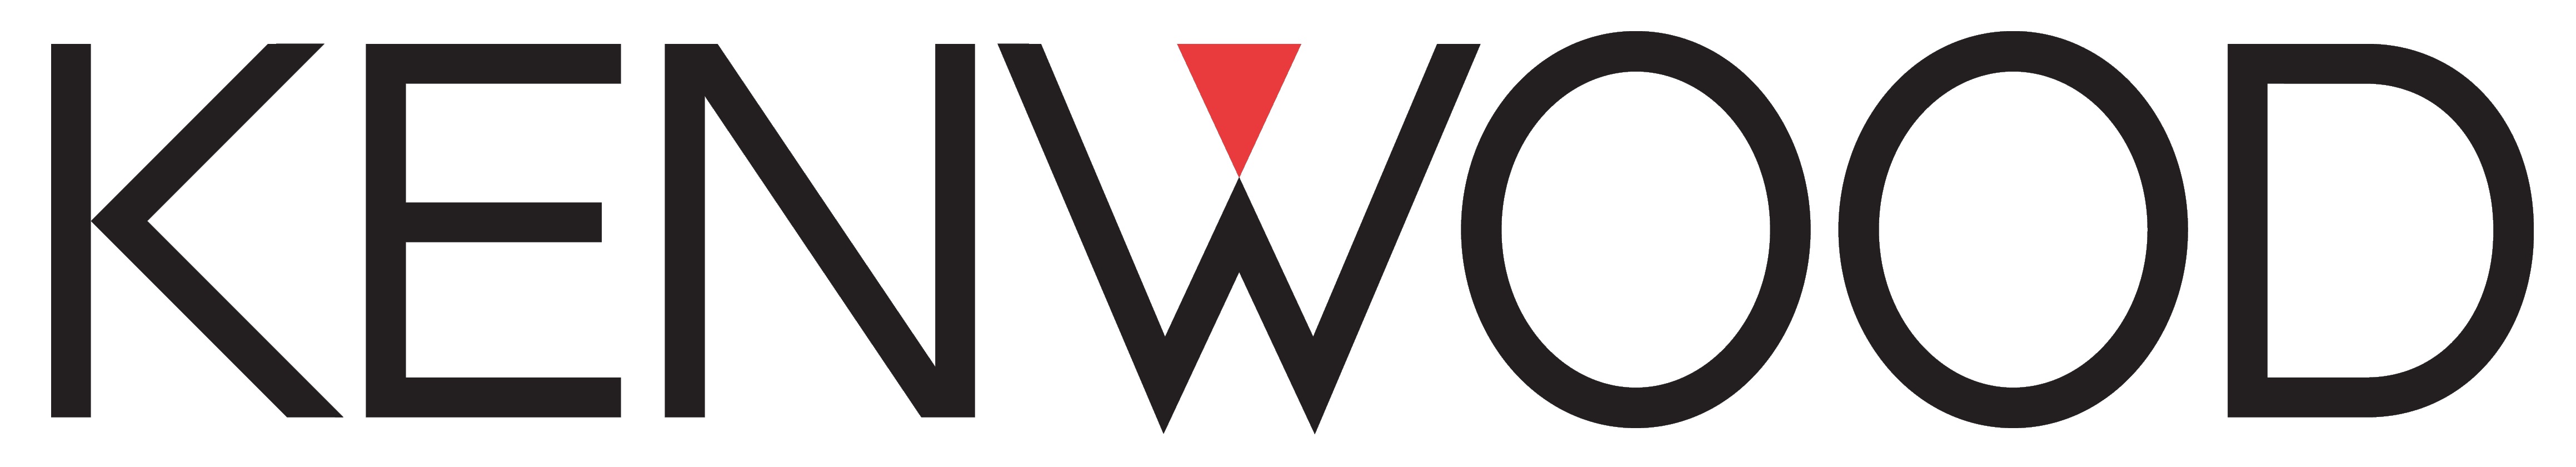 Kenwood Logo photo - 1